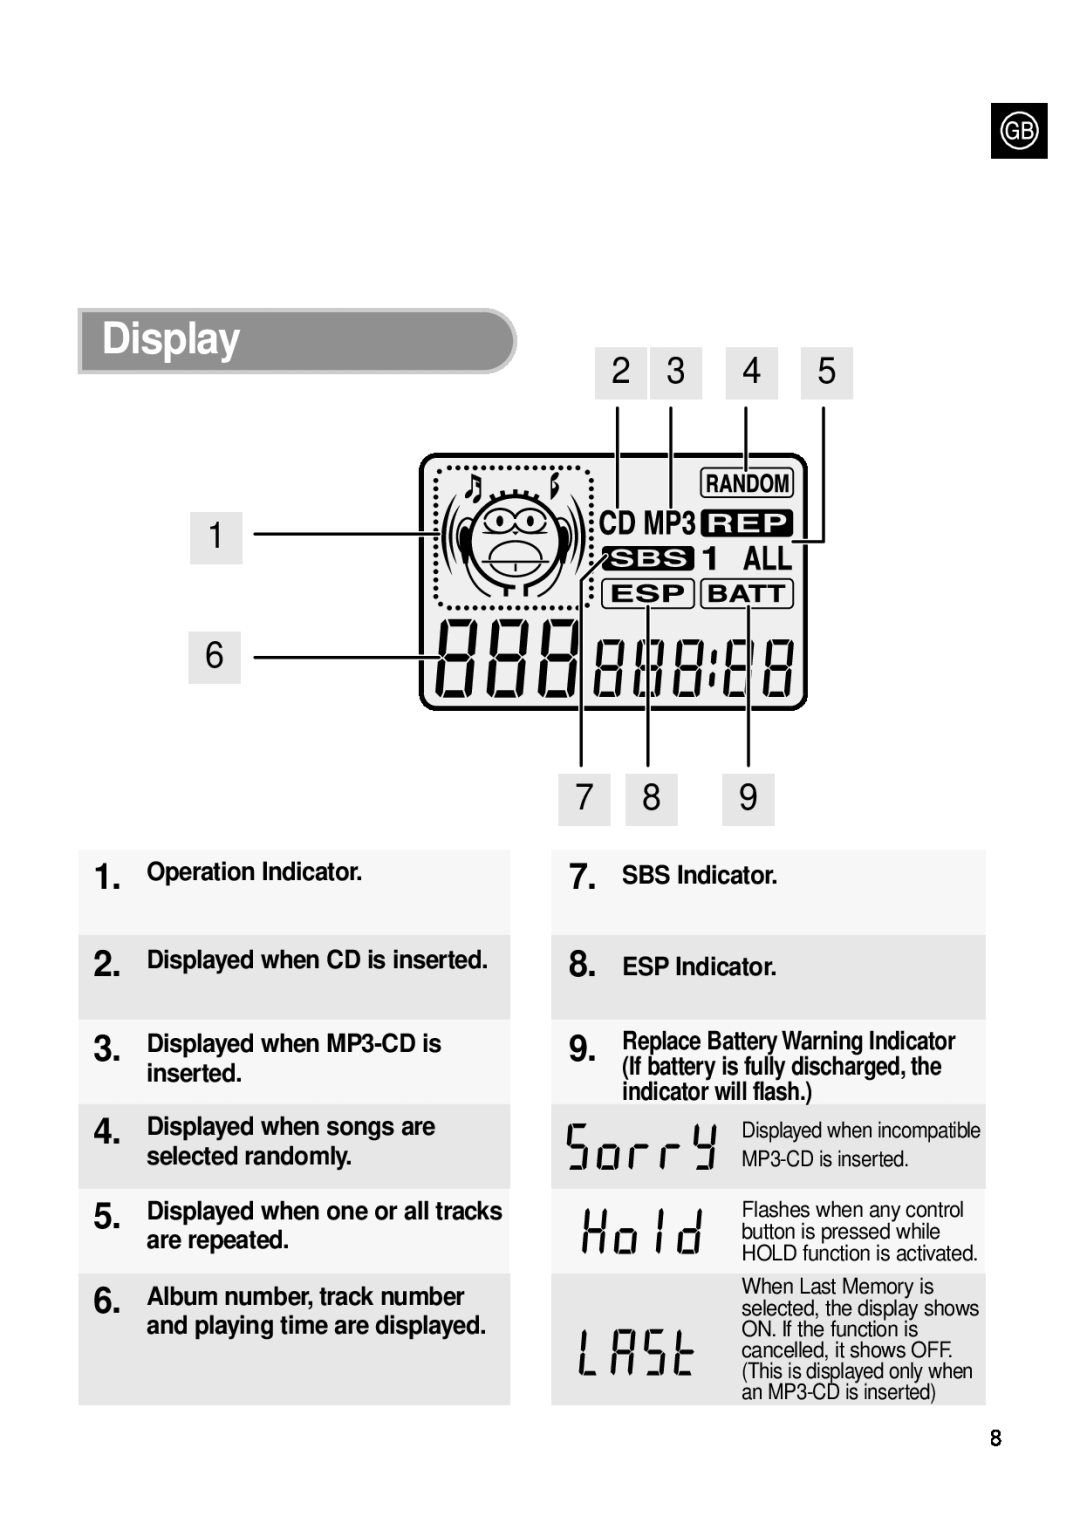 Samsung MCD-MP67 instruction manual Display, 2 3 4 